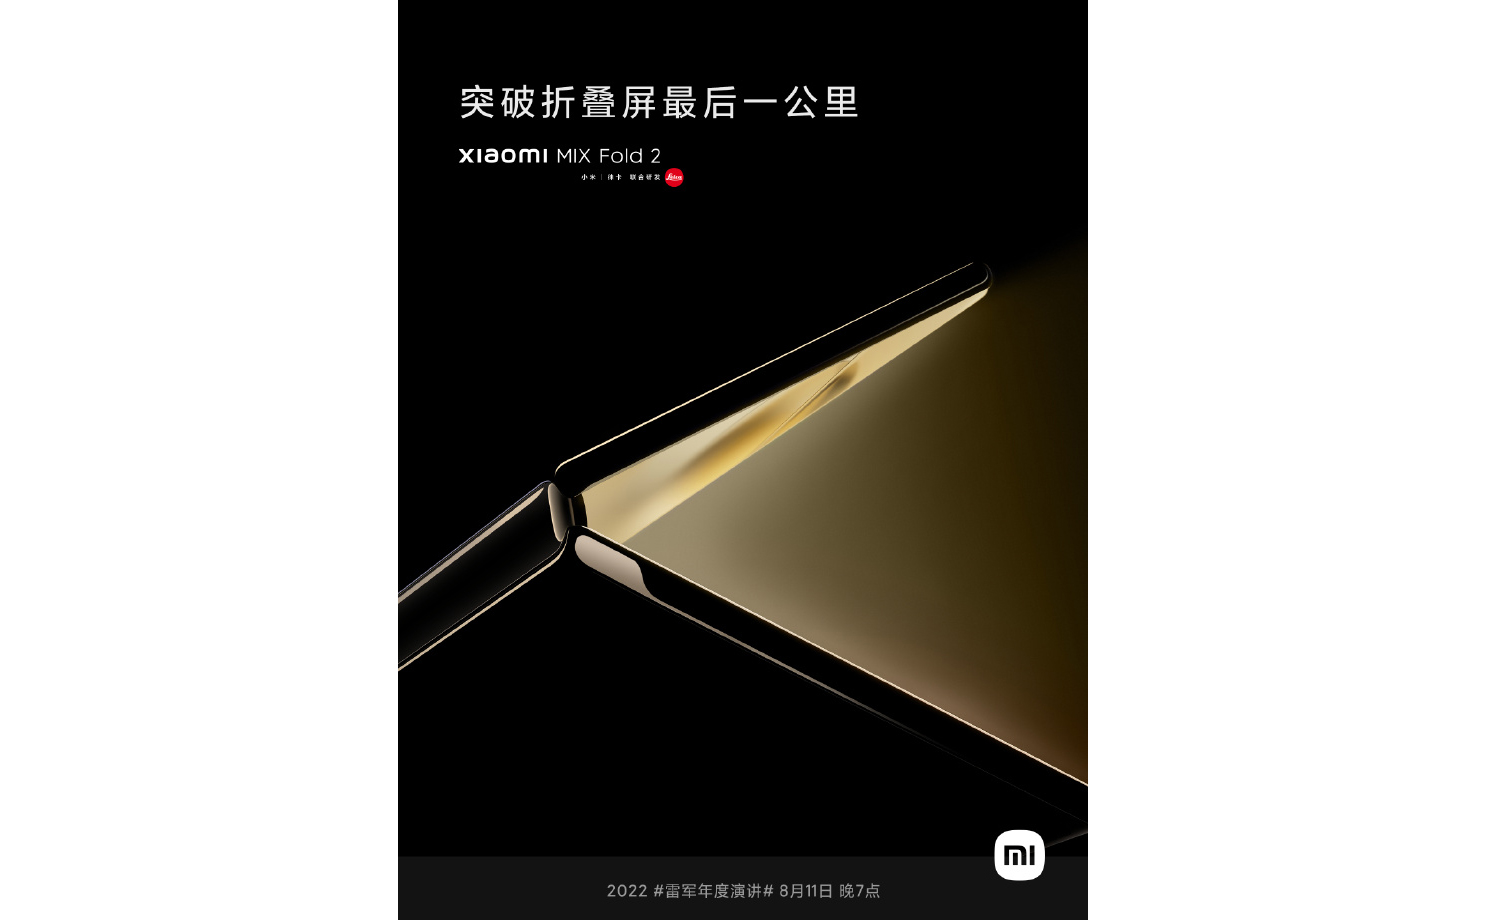 Chính thức: Xiaomi MIX Fold 2 sẽ ra mắt vào ngày 11 tháng 8